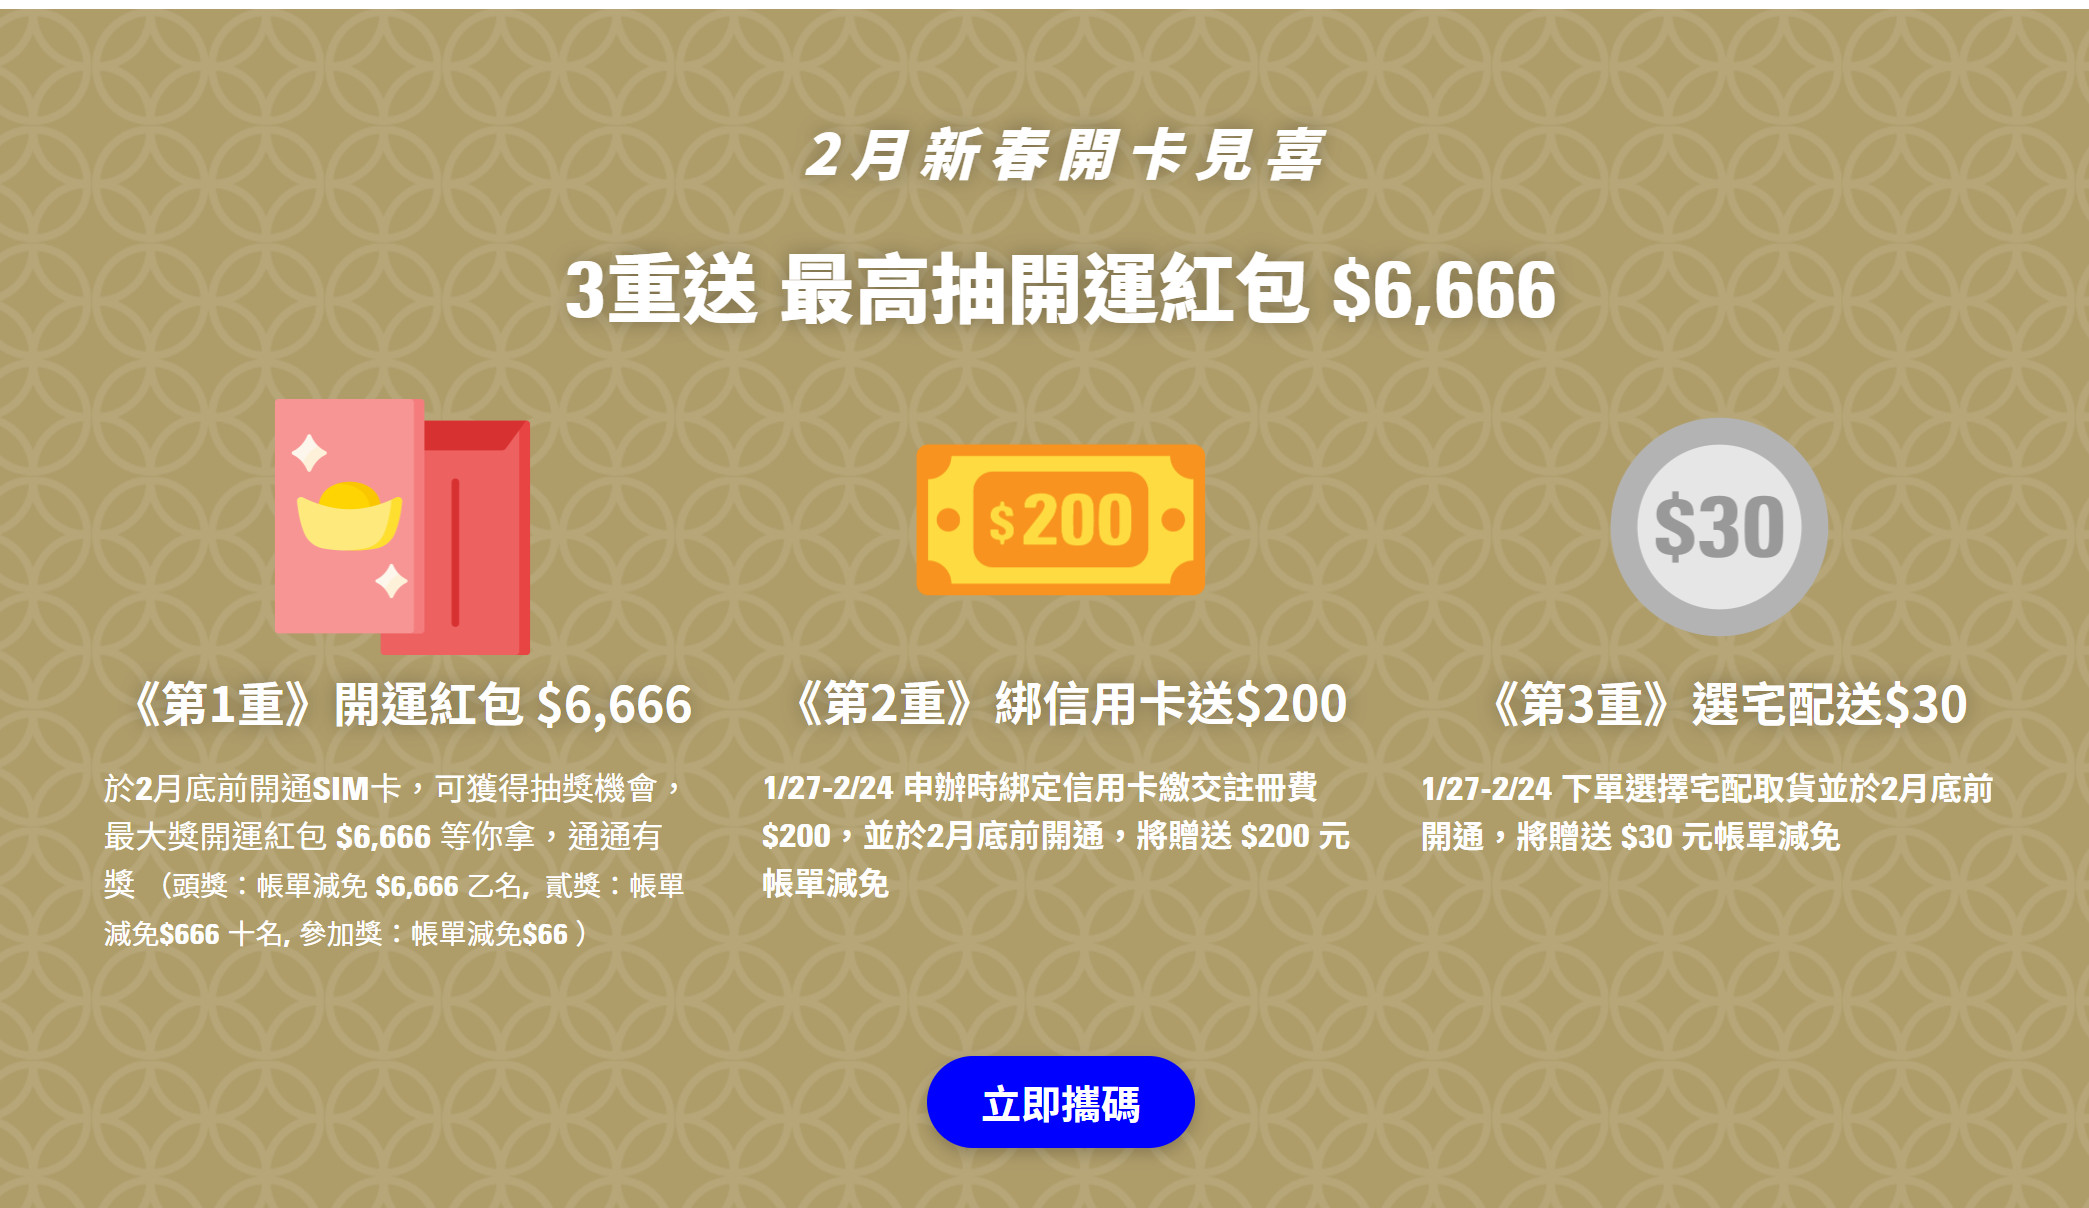 【無框行動】新春專案，中華電信大4G網路吃到飽466元，低流量只要166元!超適合搭配台灣之星雙11專案。 - 無框行動門市 - 敗家達人推薦